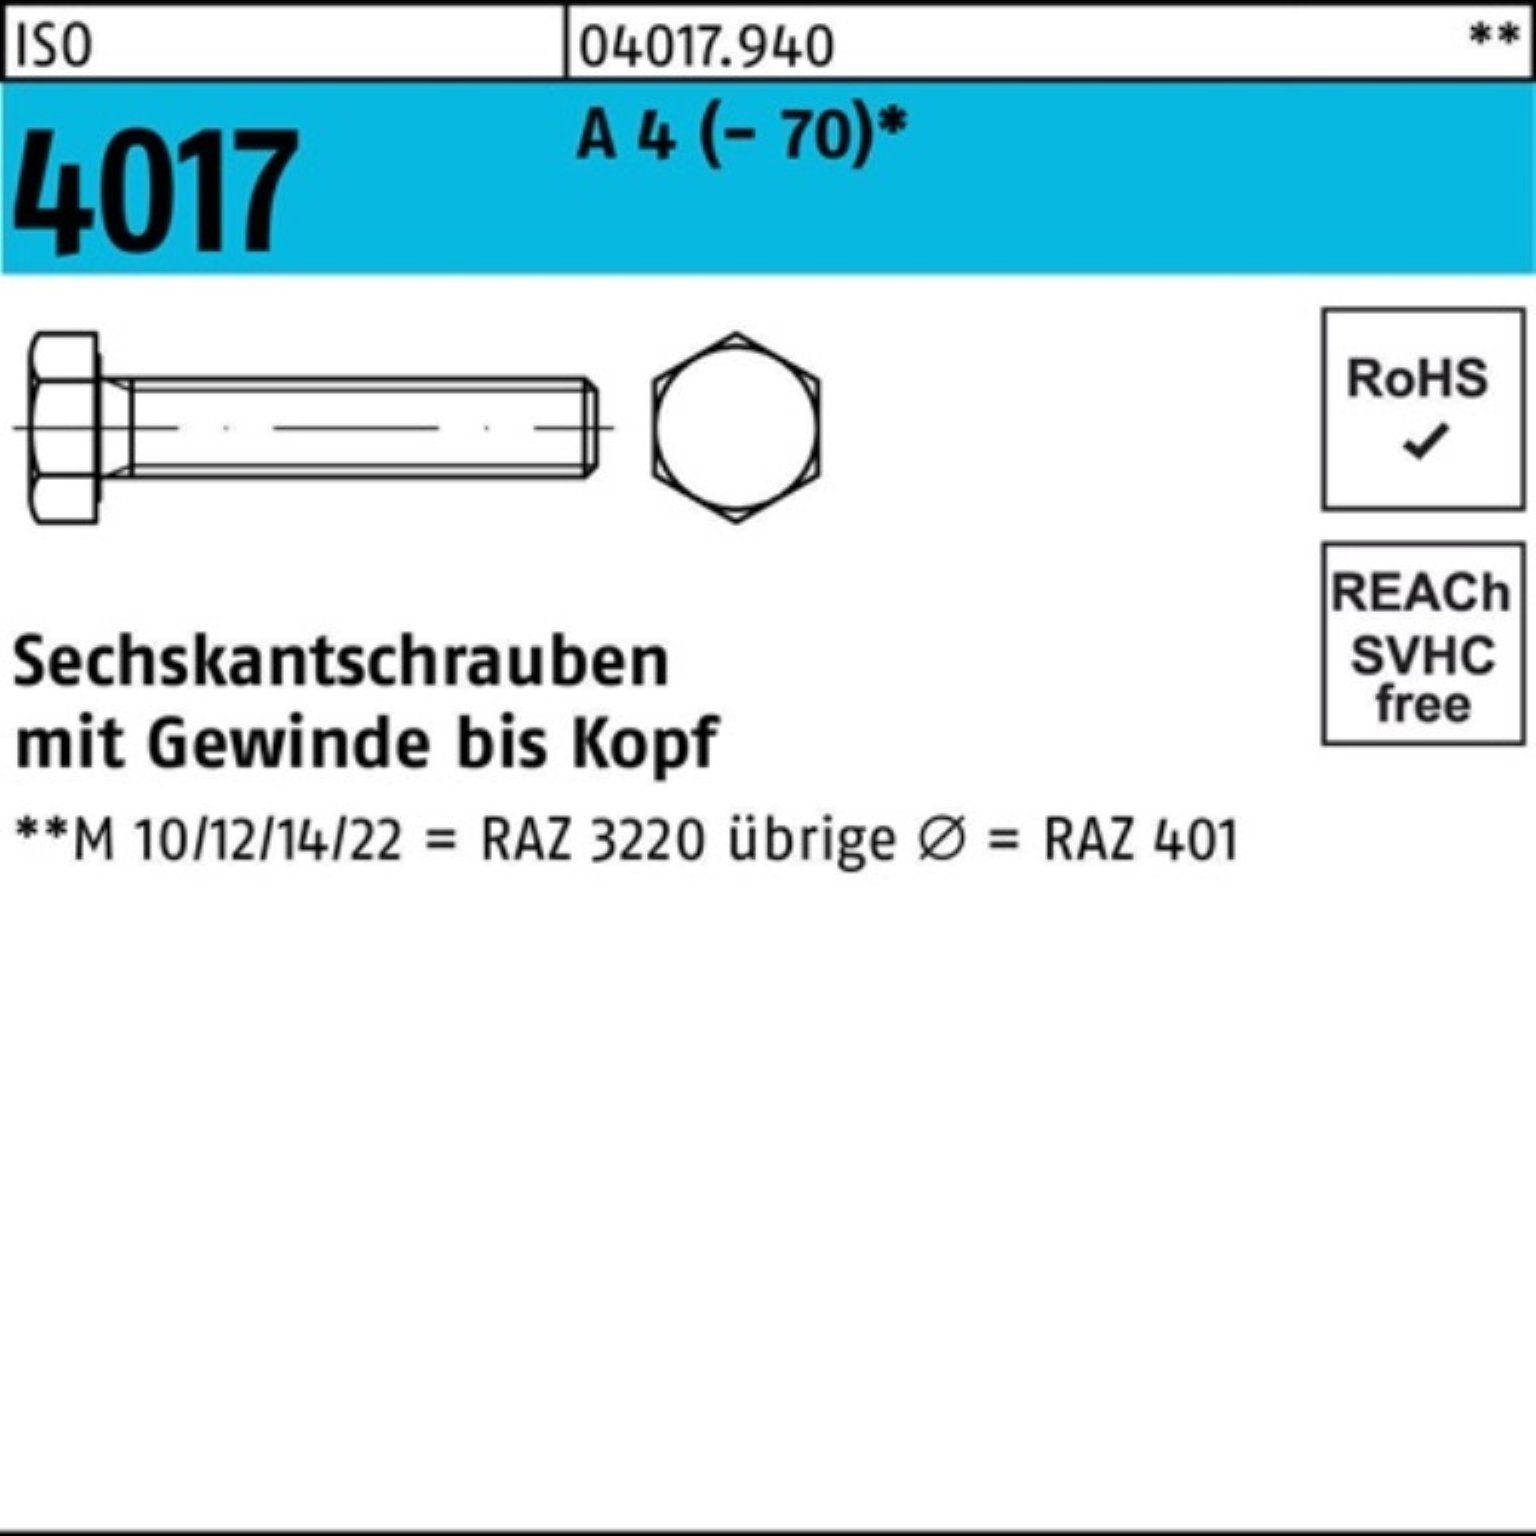 Bufab Sechskantschraube 100er Pack Sechskantschraube ISO 4017 VG M22x 55 A 4 (70) 1 Stück I